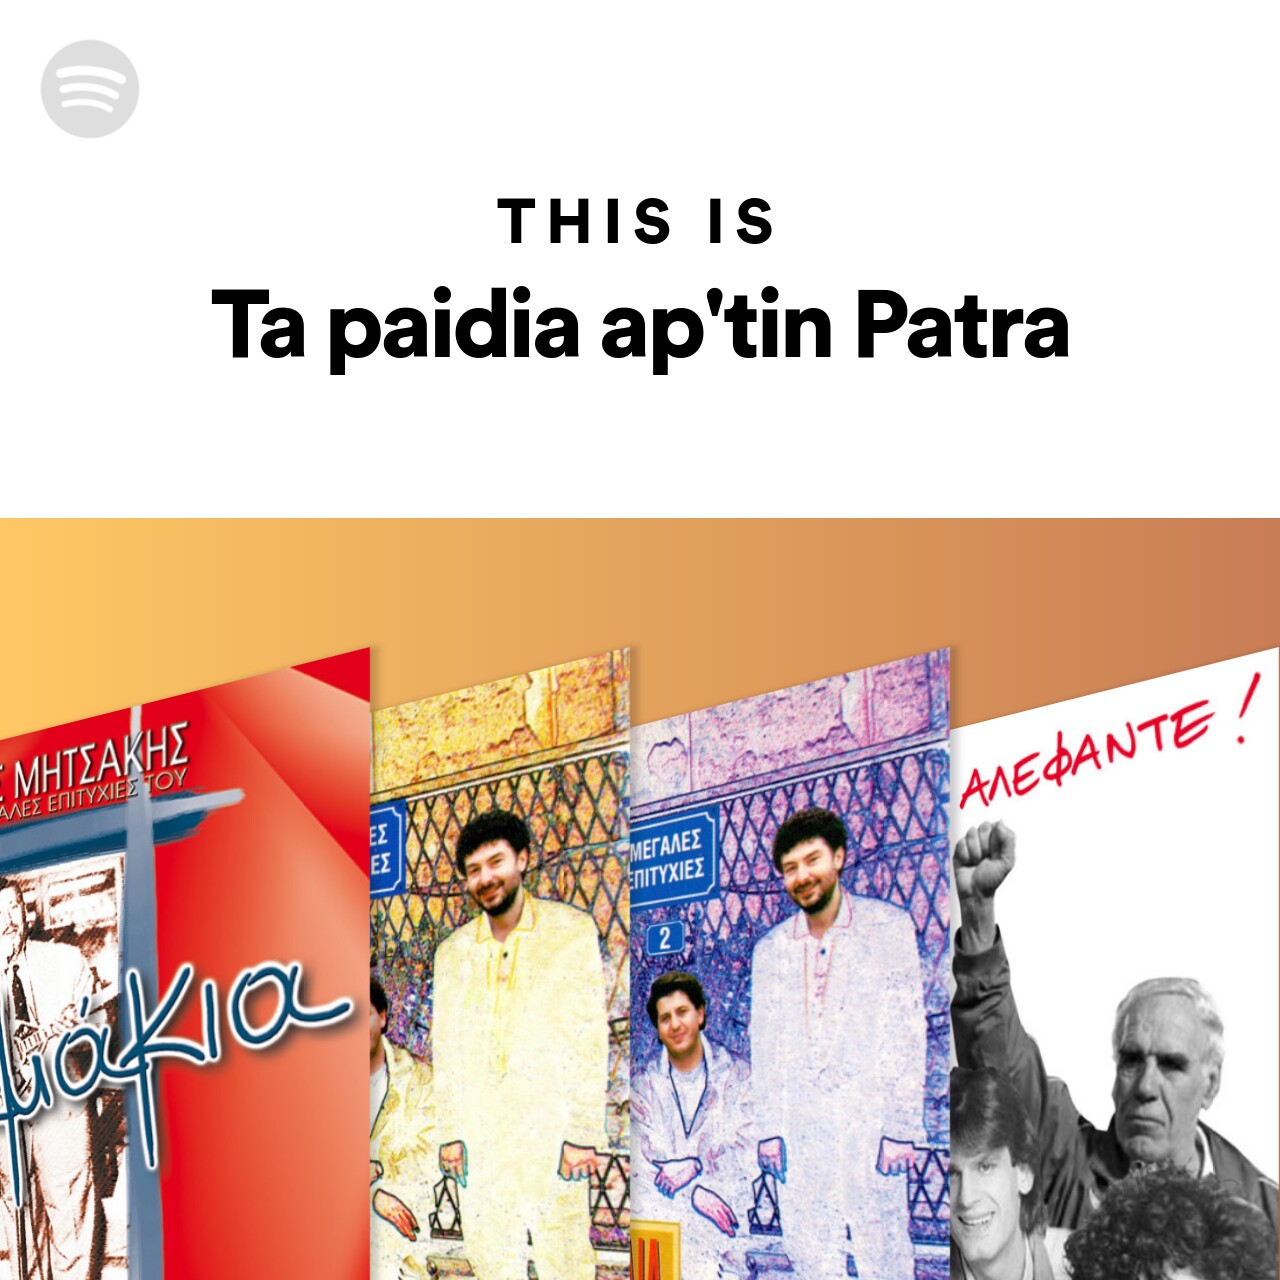 This Is Ta paidia ap'tin Patra